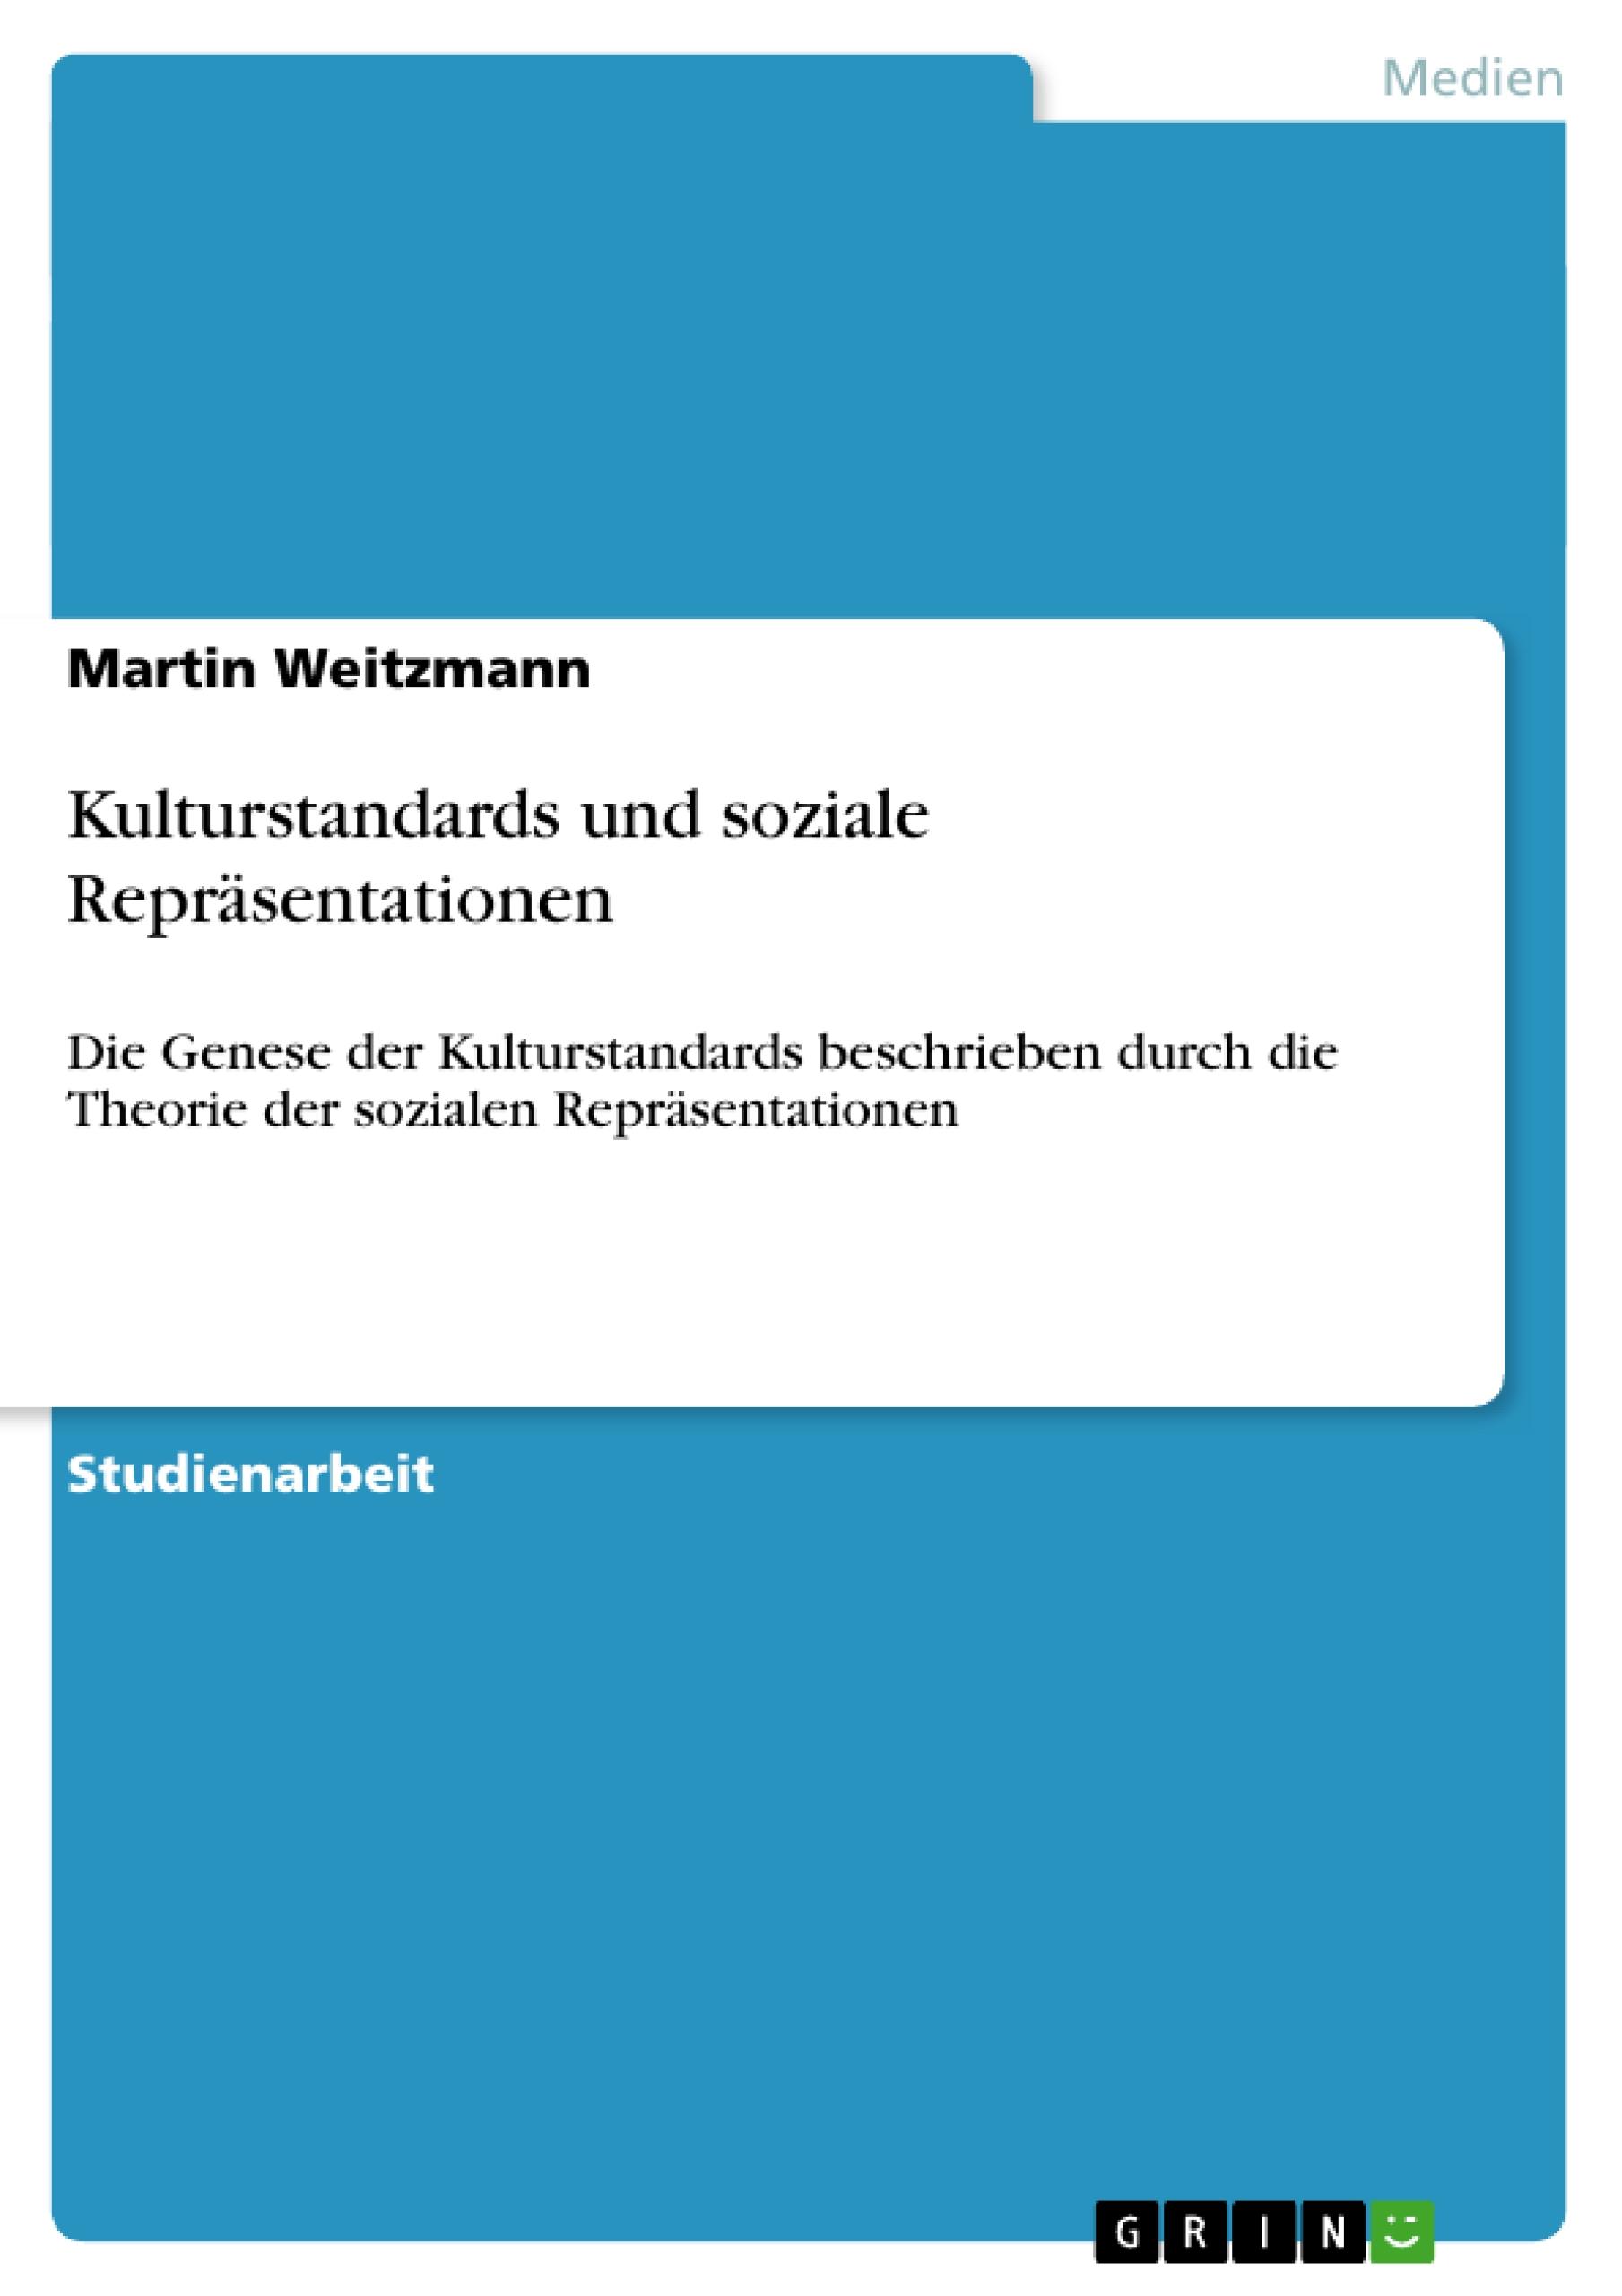 Kulturstandards und soziale Repraesentationen - Weitzmann, Martin